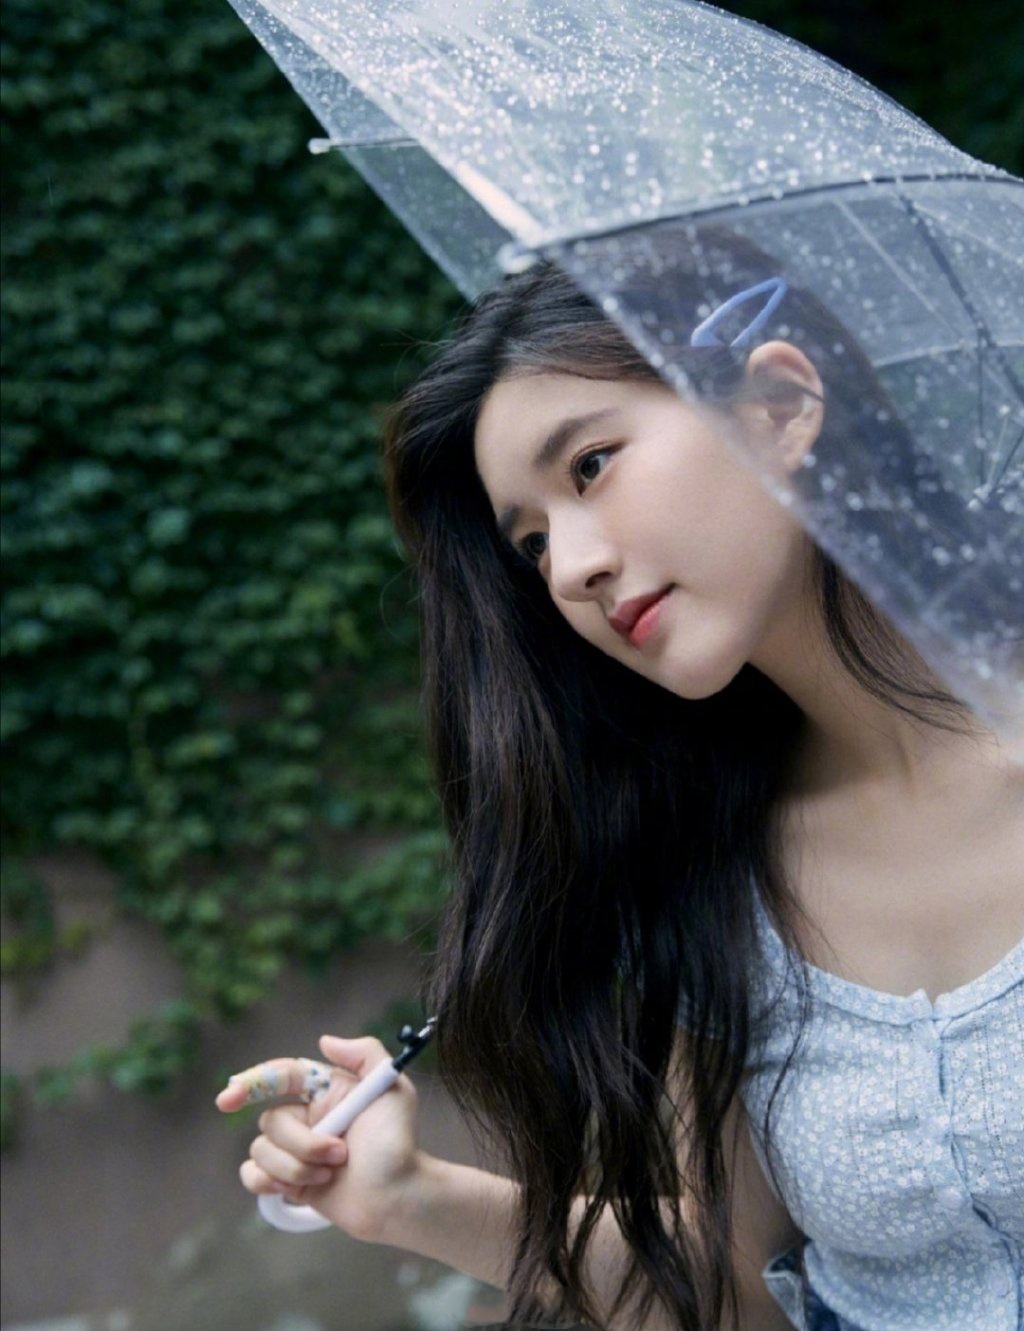 赵露思分享的一组打伞在雨中的照片,整体造型简洁具有